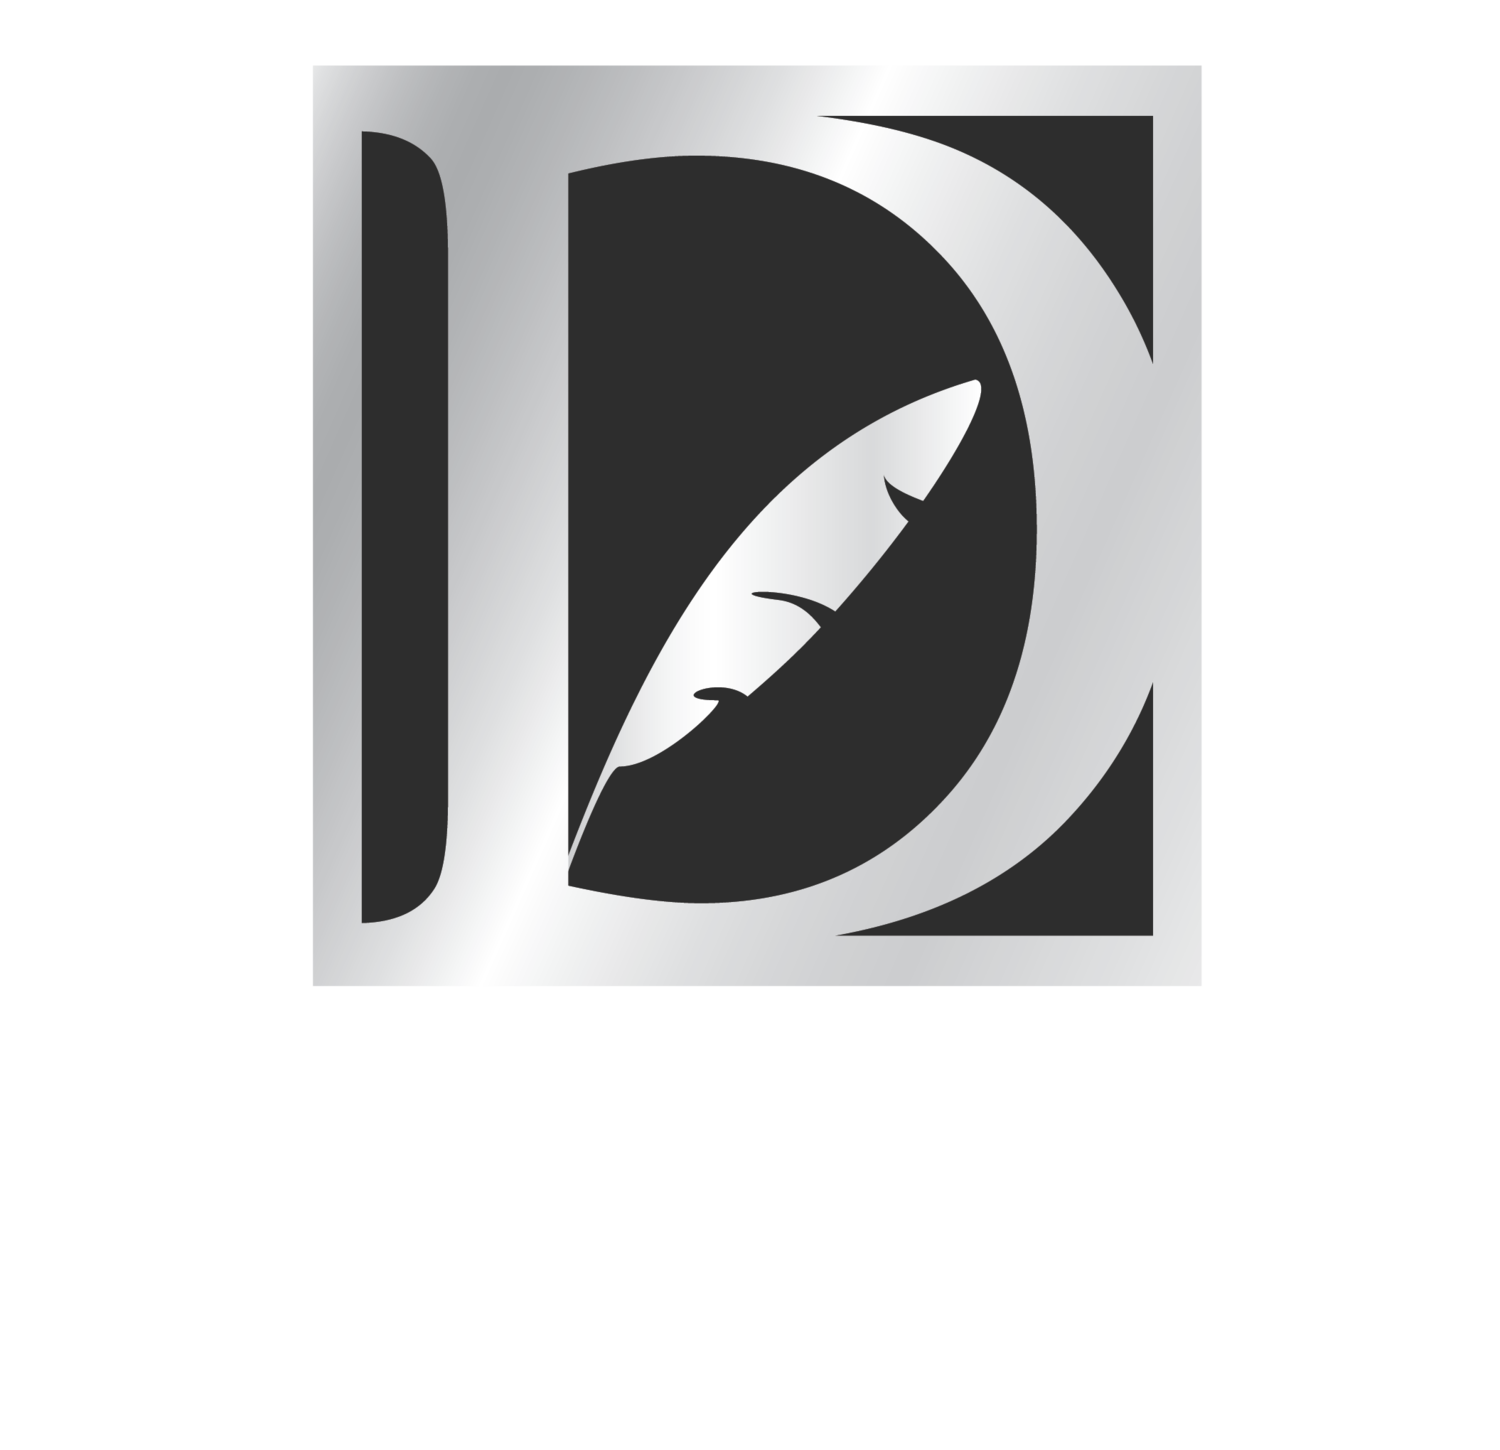 DaVinci's Dental Care